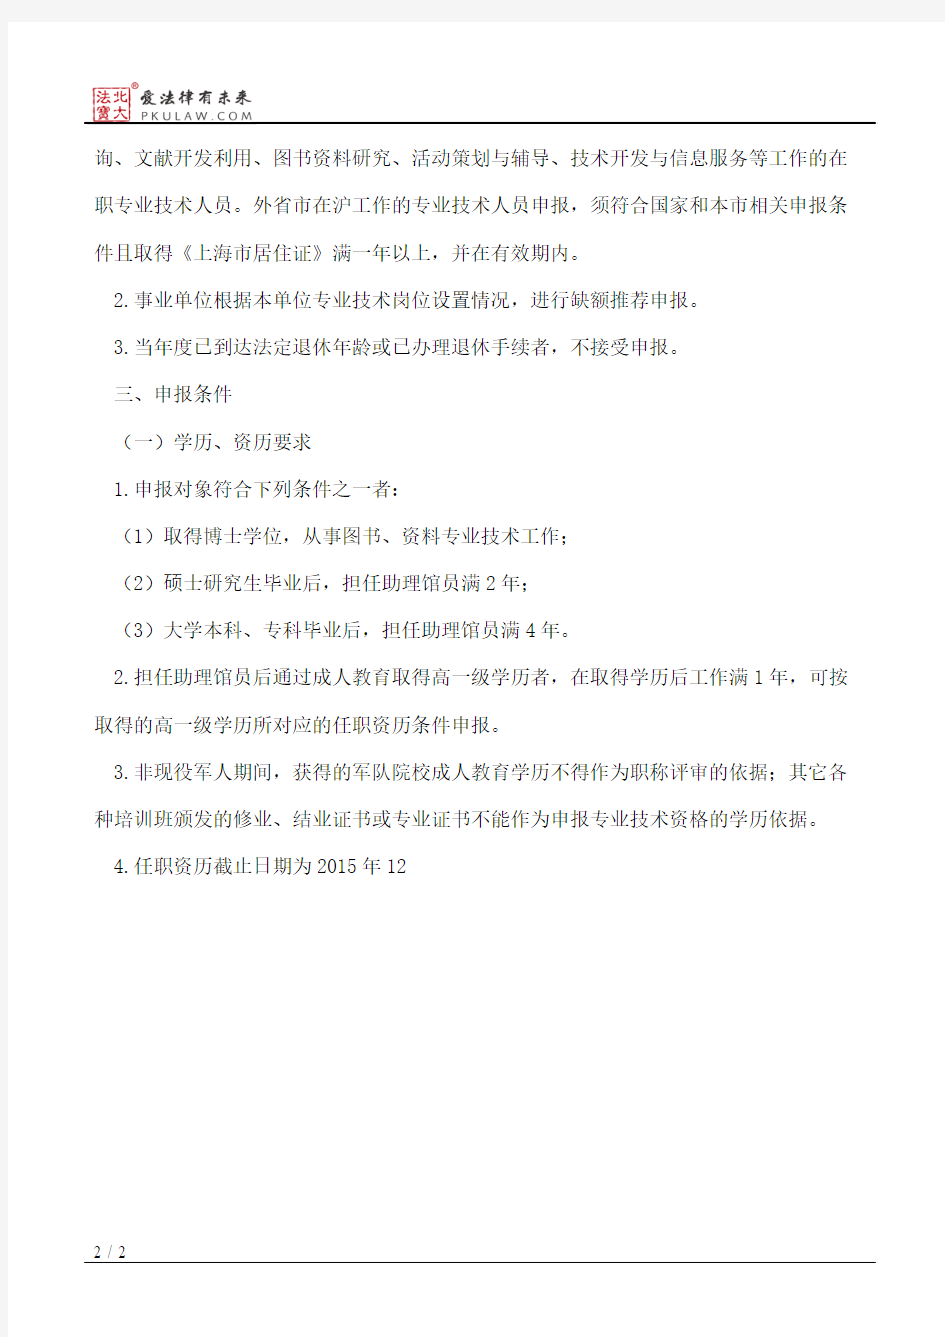 上海市文广局关于2015年上海市图书、资料系列中级专业技术职务任